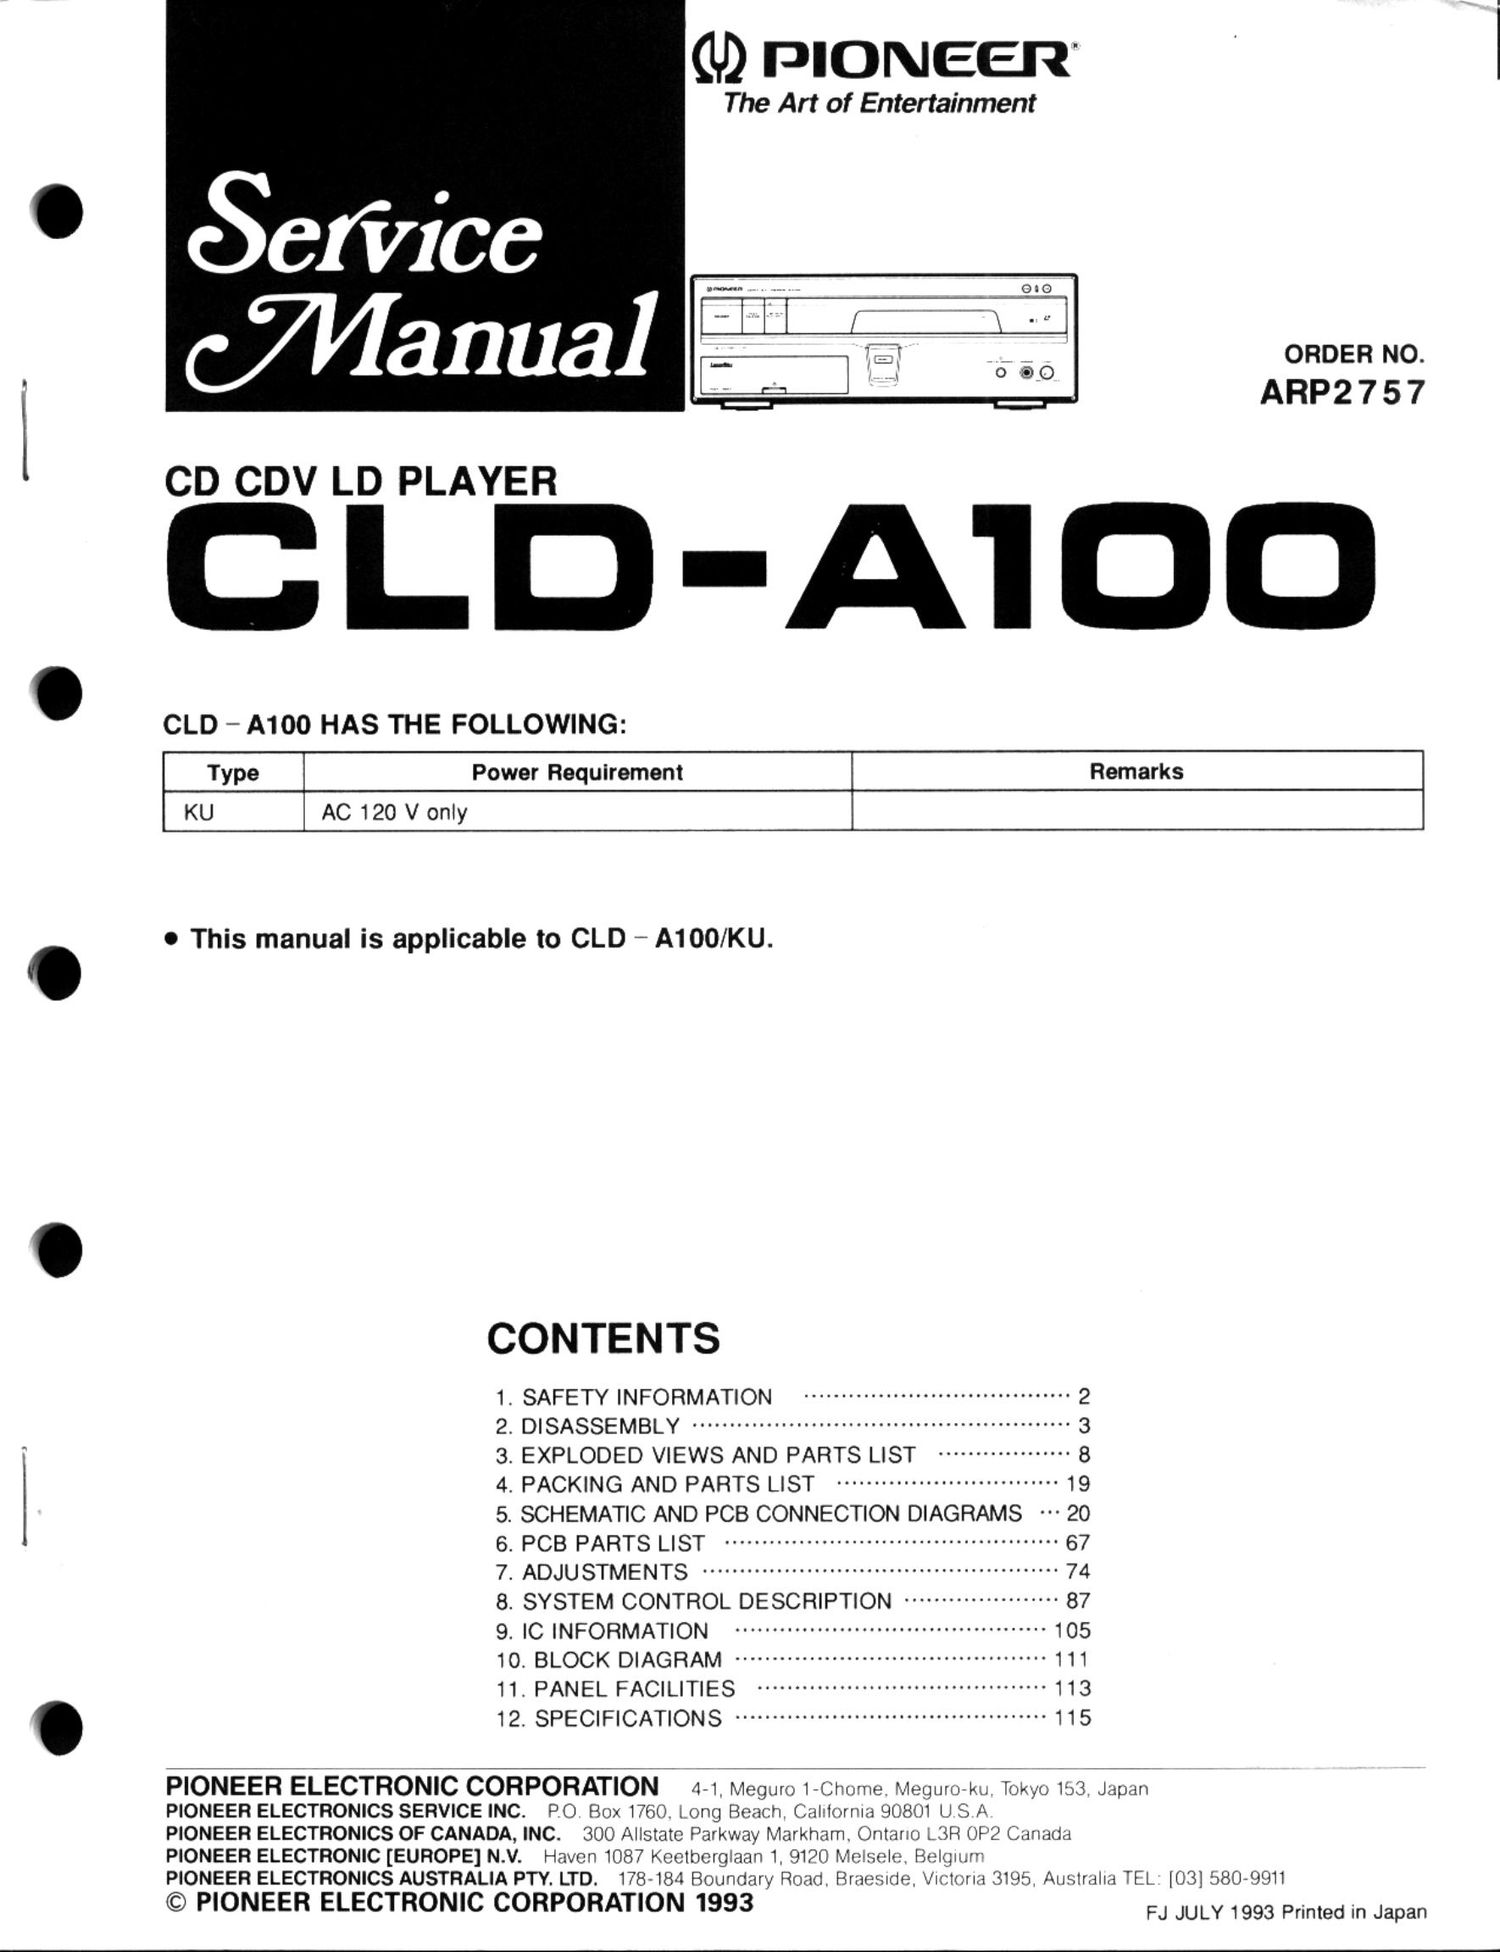 pioneer clda 100 service manual